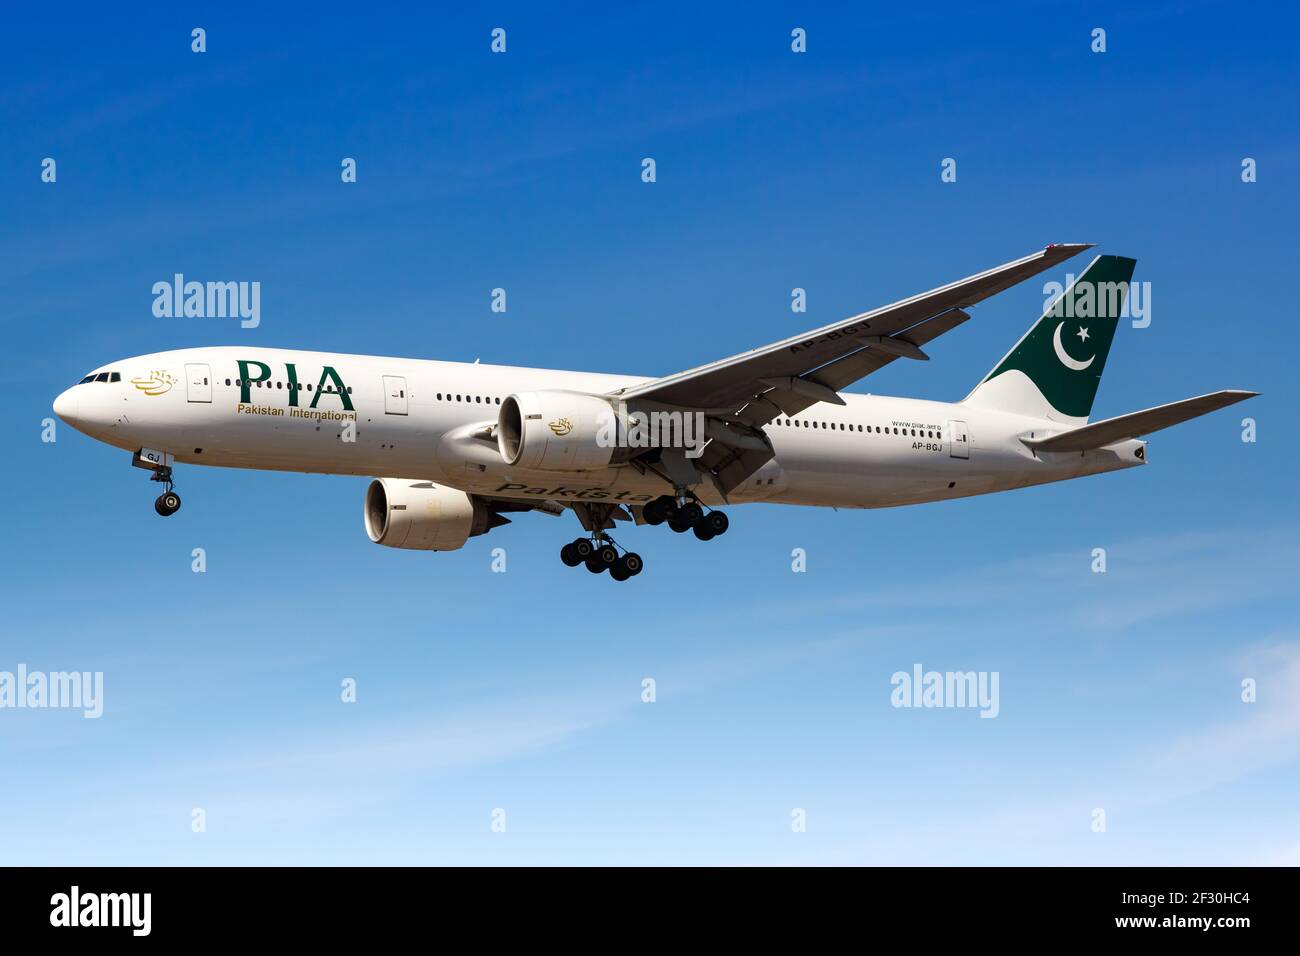 London, Vereinigtes Königreich - 1. August 2018: PIA Pakistan International Boeing 777 Flugzeug am Flughafen London Heathrow (LHR) im Vereinigten Königreich. Stockfoto